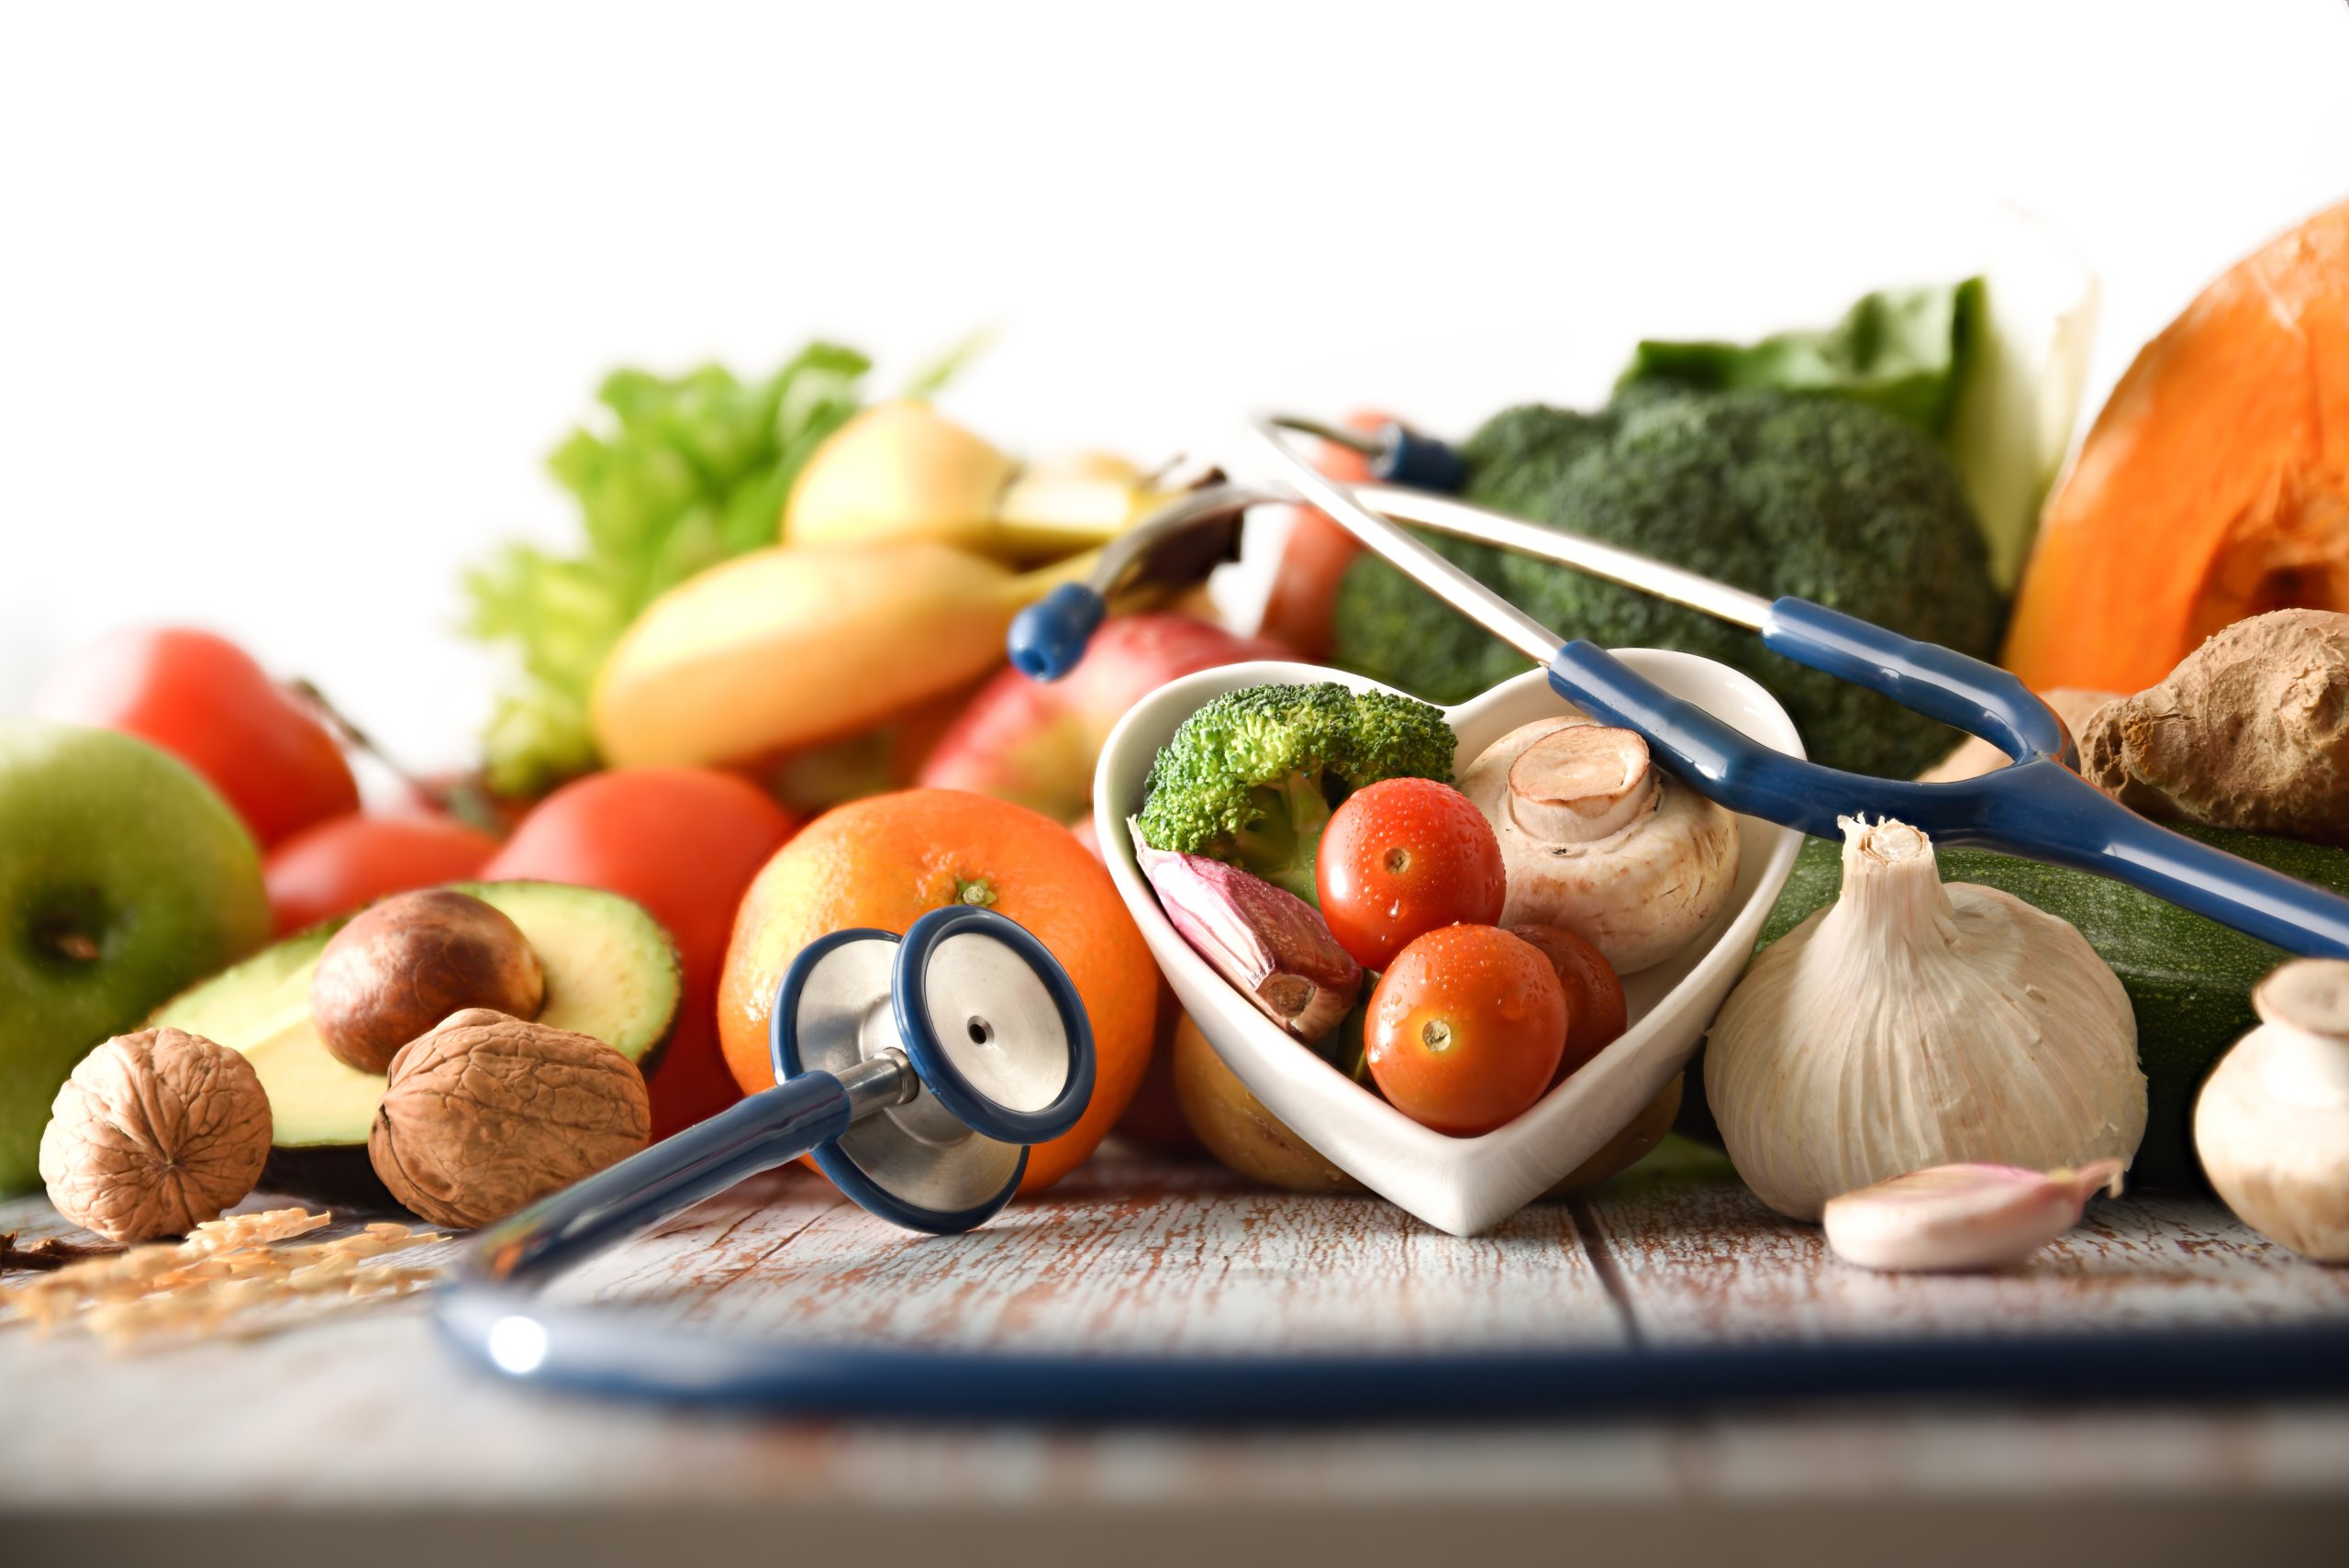 Eine bunte Gemüsemischung liegt auf einem Holztisch. In der Mitte ein Herz aus weißem Porzellan und ein Stethoskop.